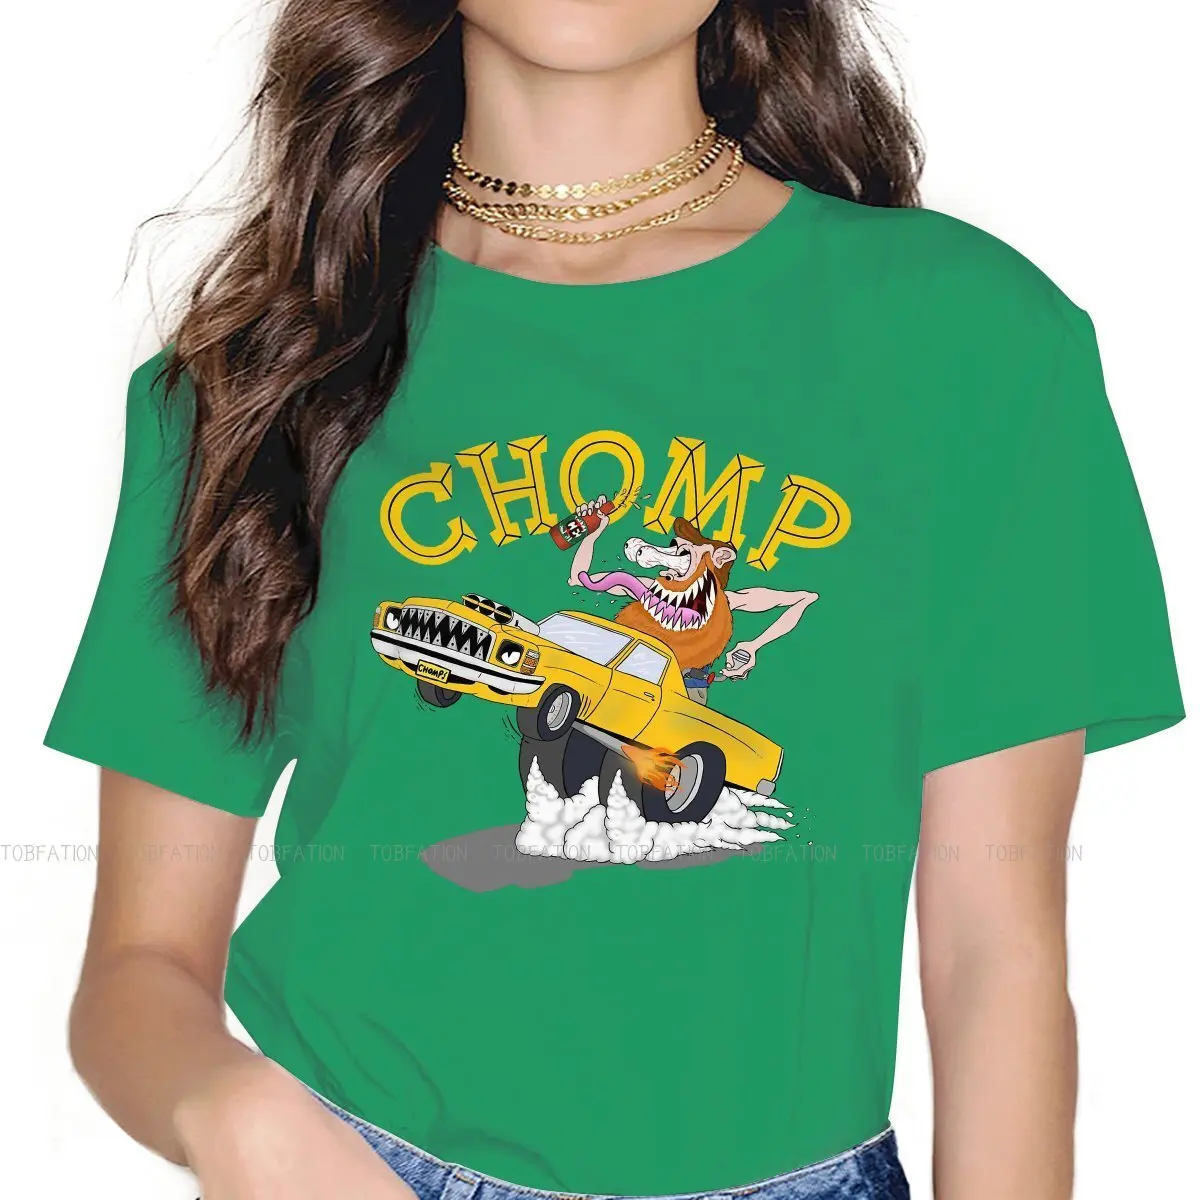 

Футболка Chomp в стиле хип-хоп, топы с мультяшным принтом персонажей мультфильмов сказок крысы, удобная футболка, Специальная футболка для дев...